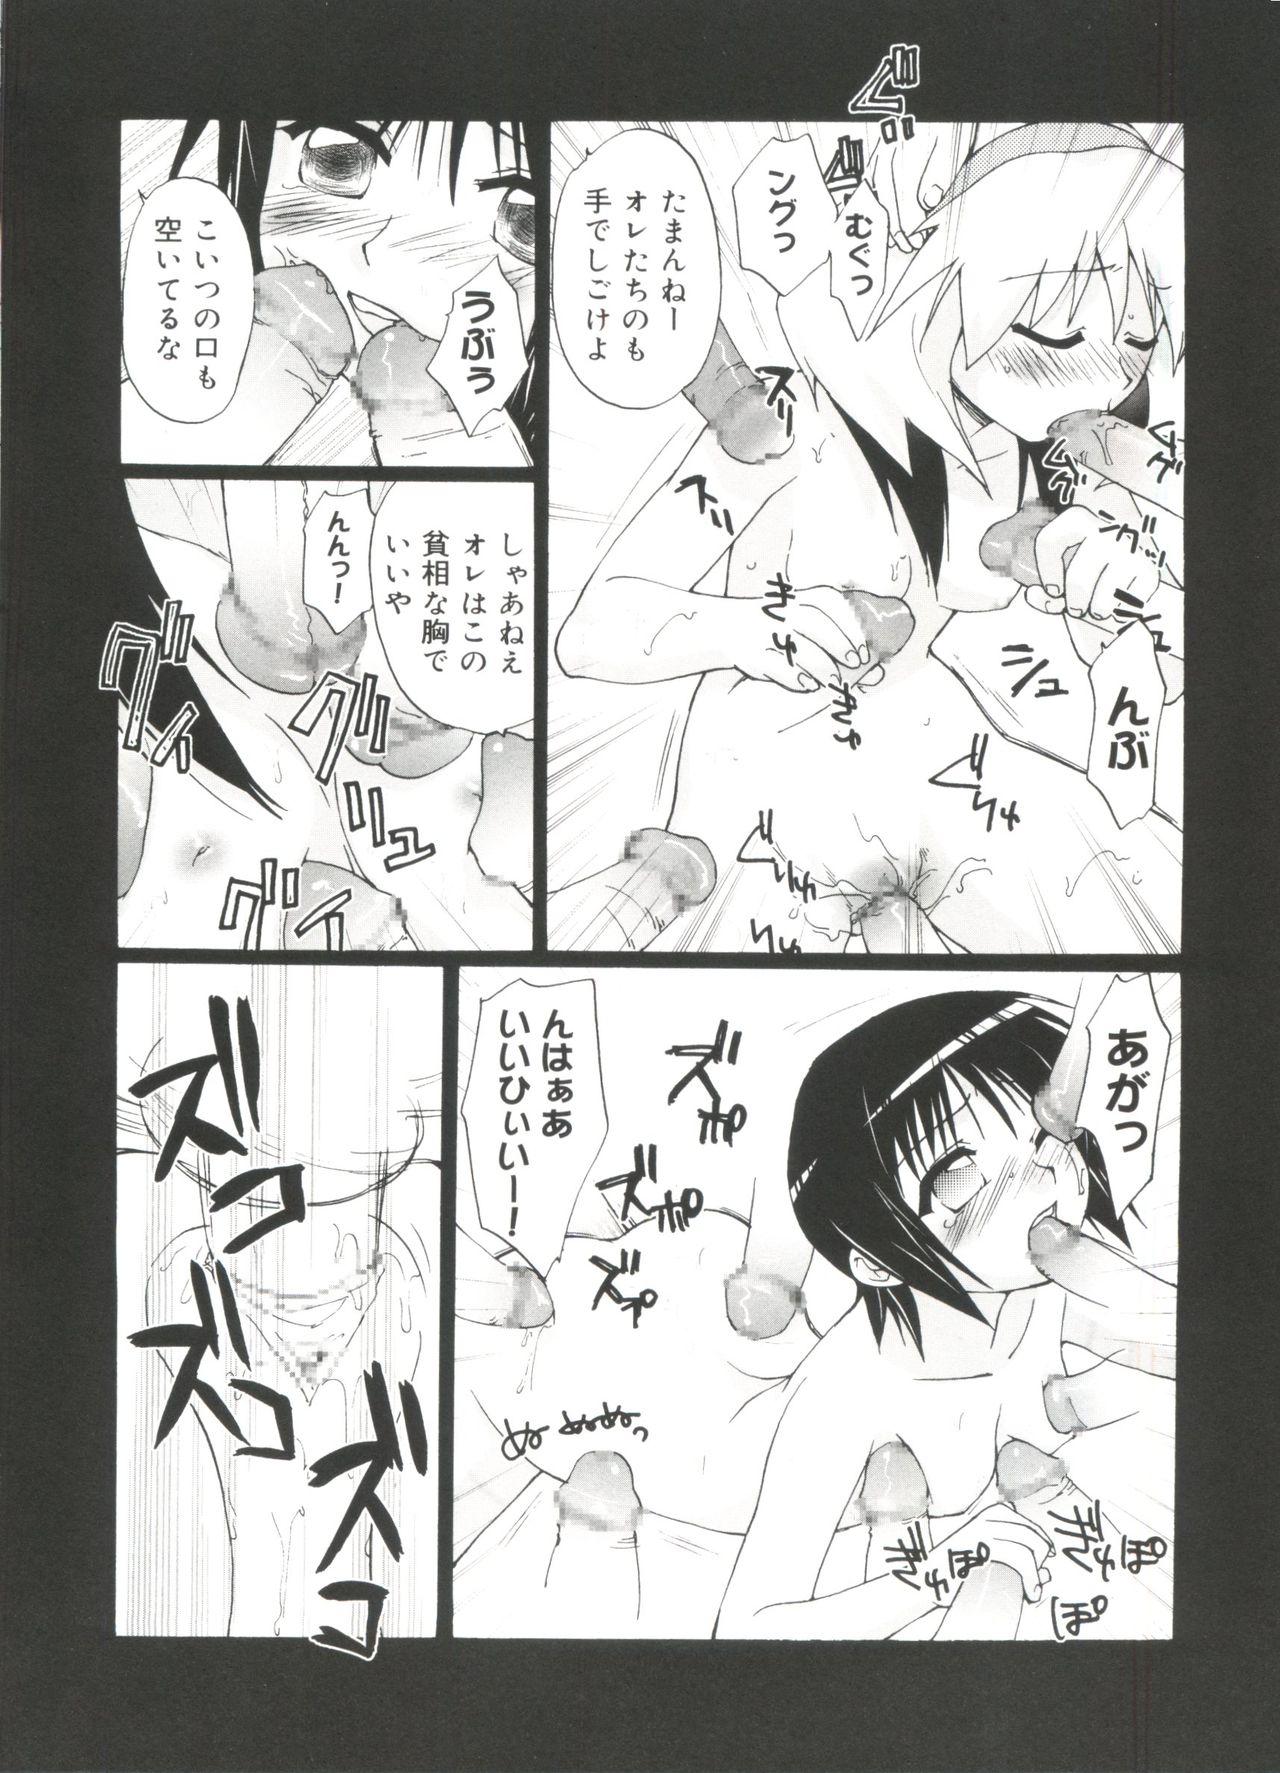 Perfect Teen Love Chara Zensho Vol. 2 - Cardcaptor sakura Sister princess Chobits Tokyo mew mew Mahoromatic Mujer - Page 11